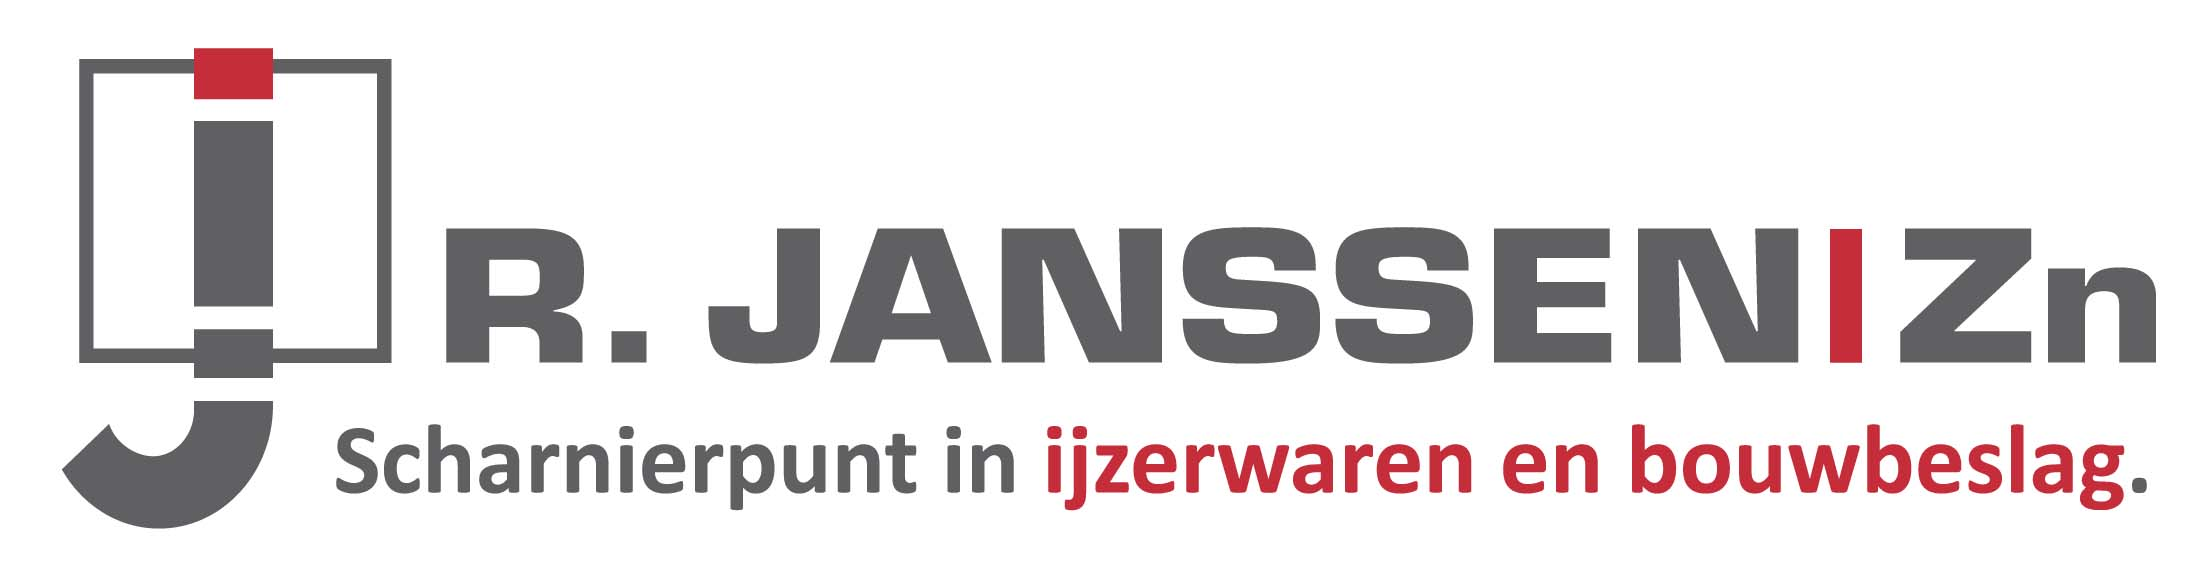 R Janssen logo